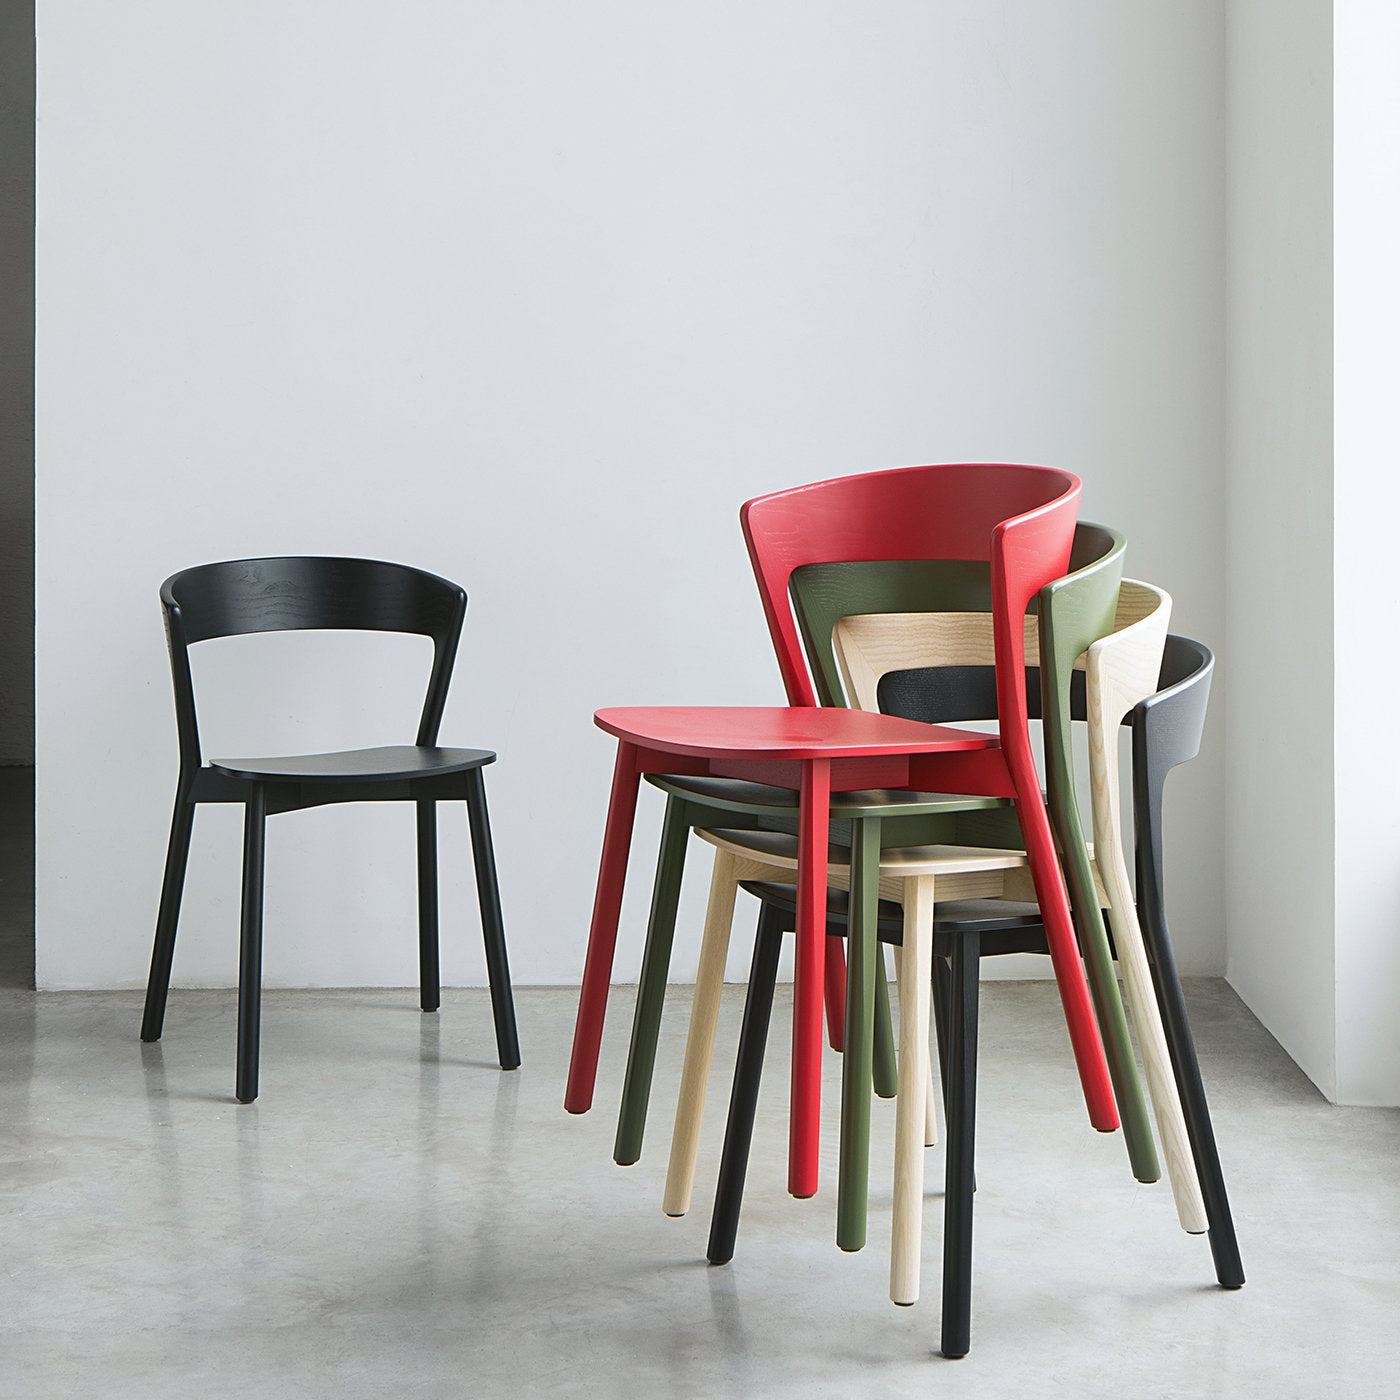 Edith Le Black Chair by Massimo Broglio - Alternative view 4